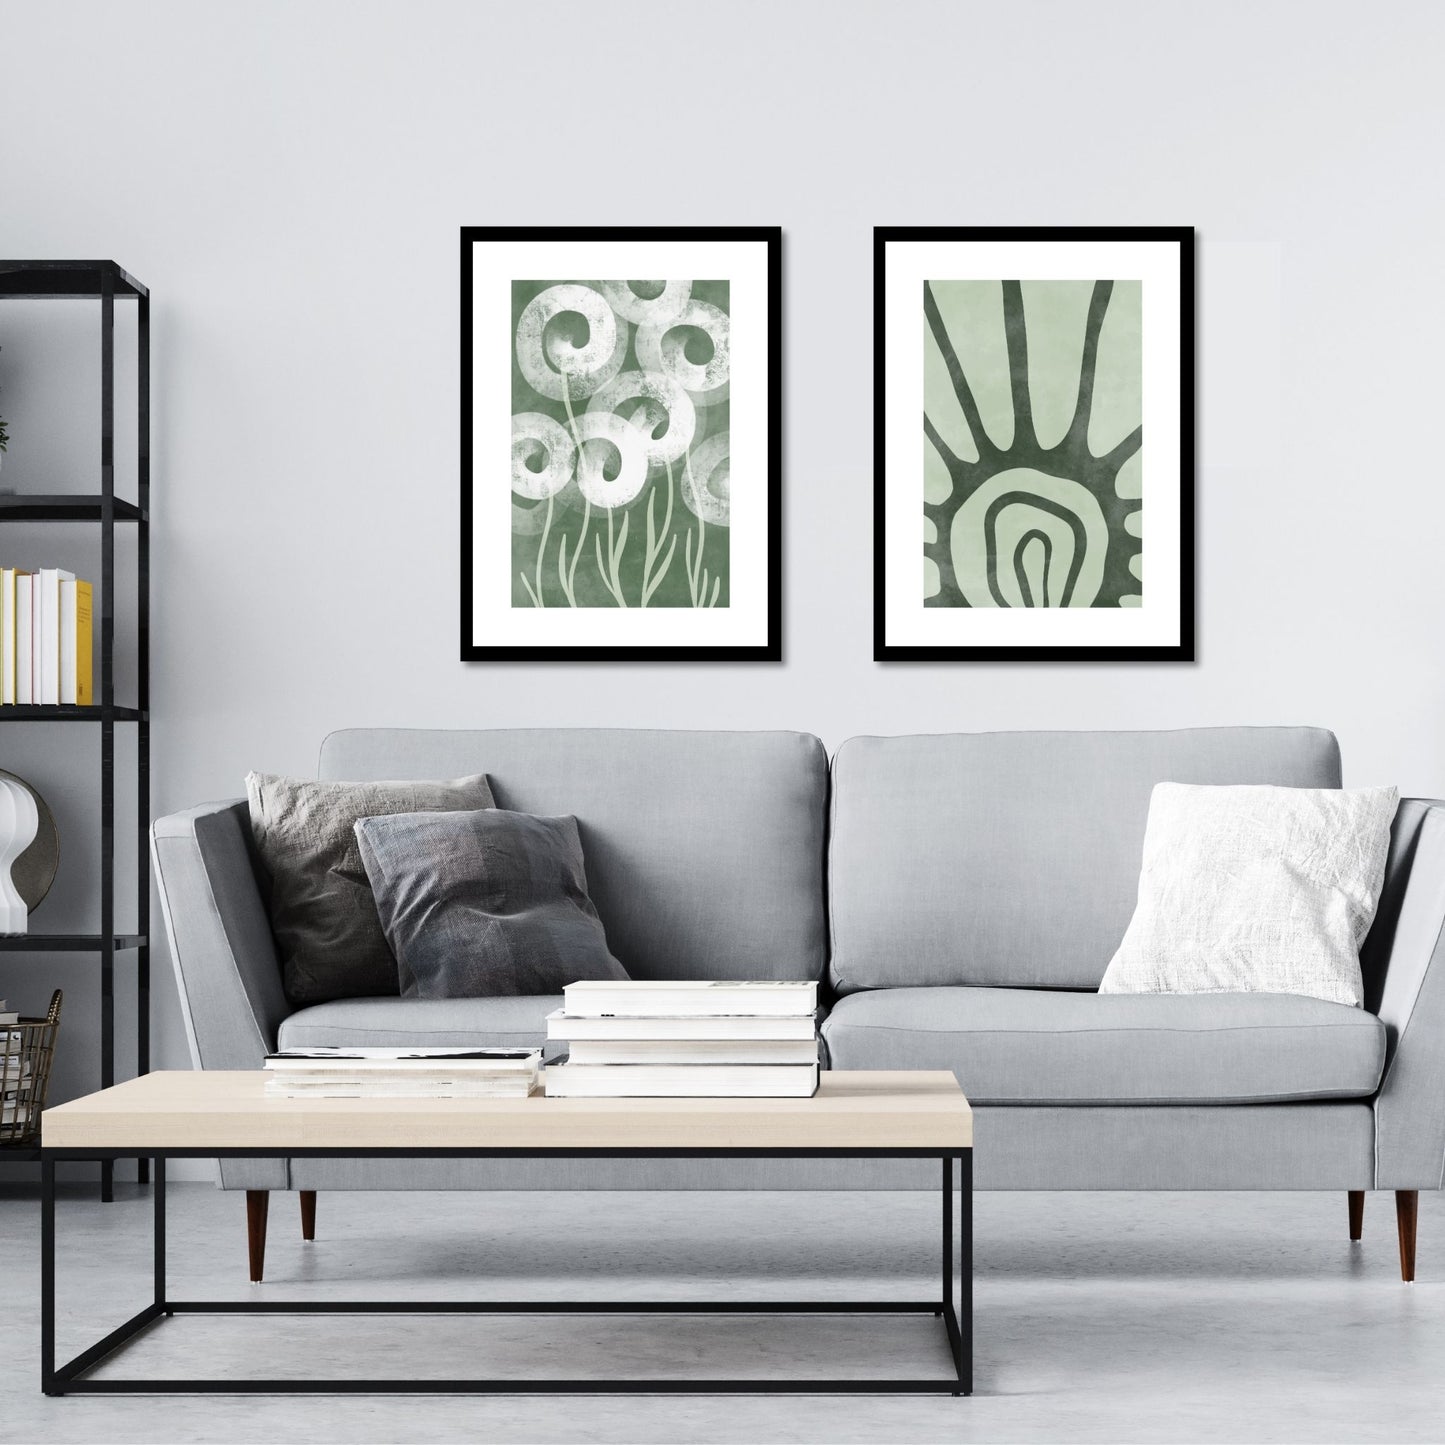 Green Abstract plakat. Med sine beroligende grønne toner og sofistikerte design, tilfører denne plakaten en følelse av ro og harmoni til ethvert rom. Illustrasjonen viser plakat No17 og No18 i sort ramme på en vegg over en sofa.